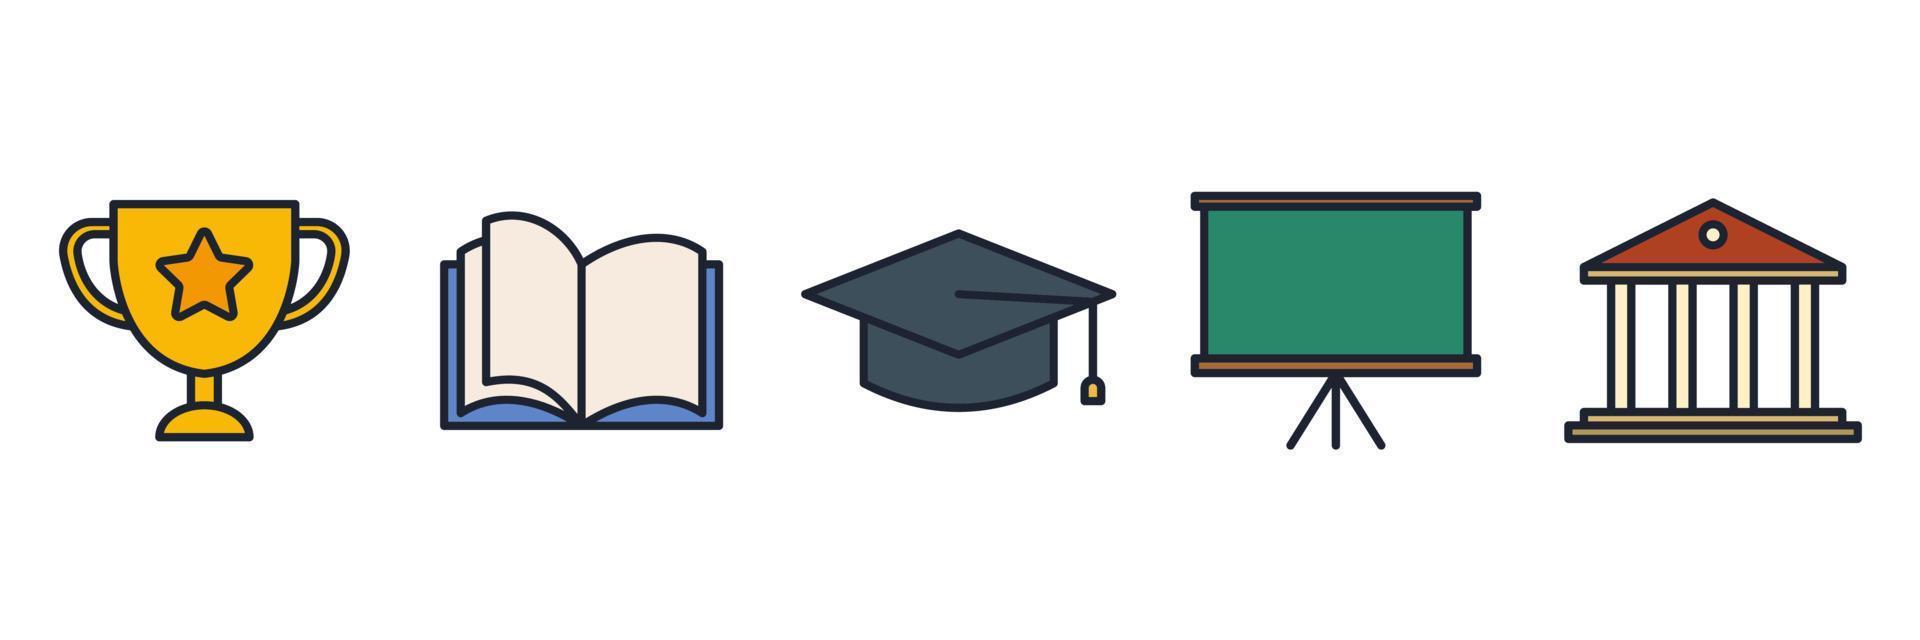 istruzione set icona simbolo modello per grafica e web design raccolta logo illustrazione vettoriale